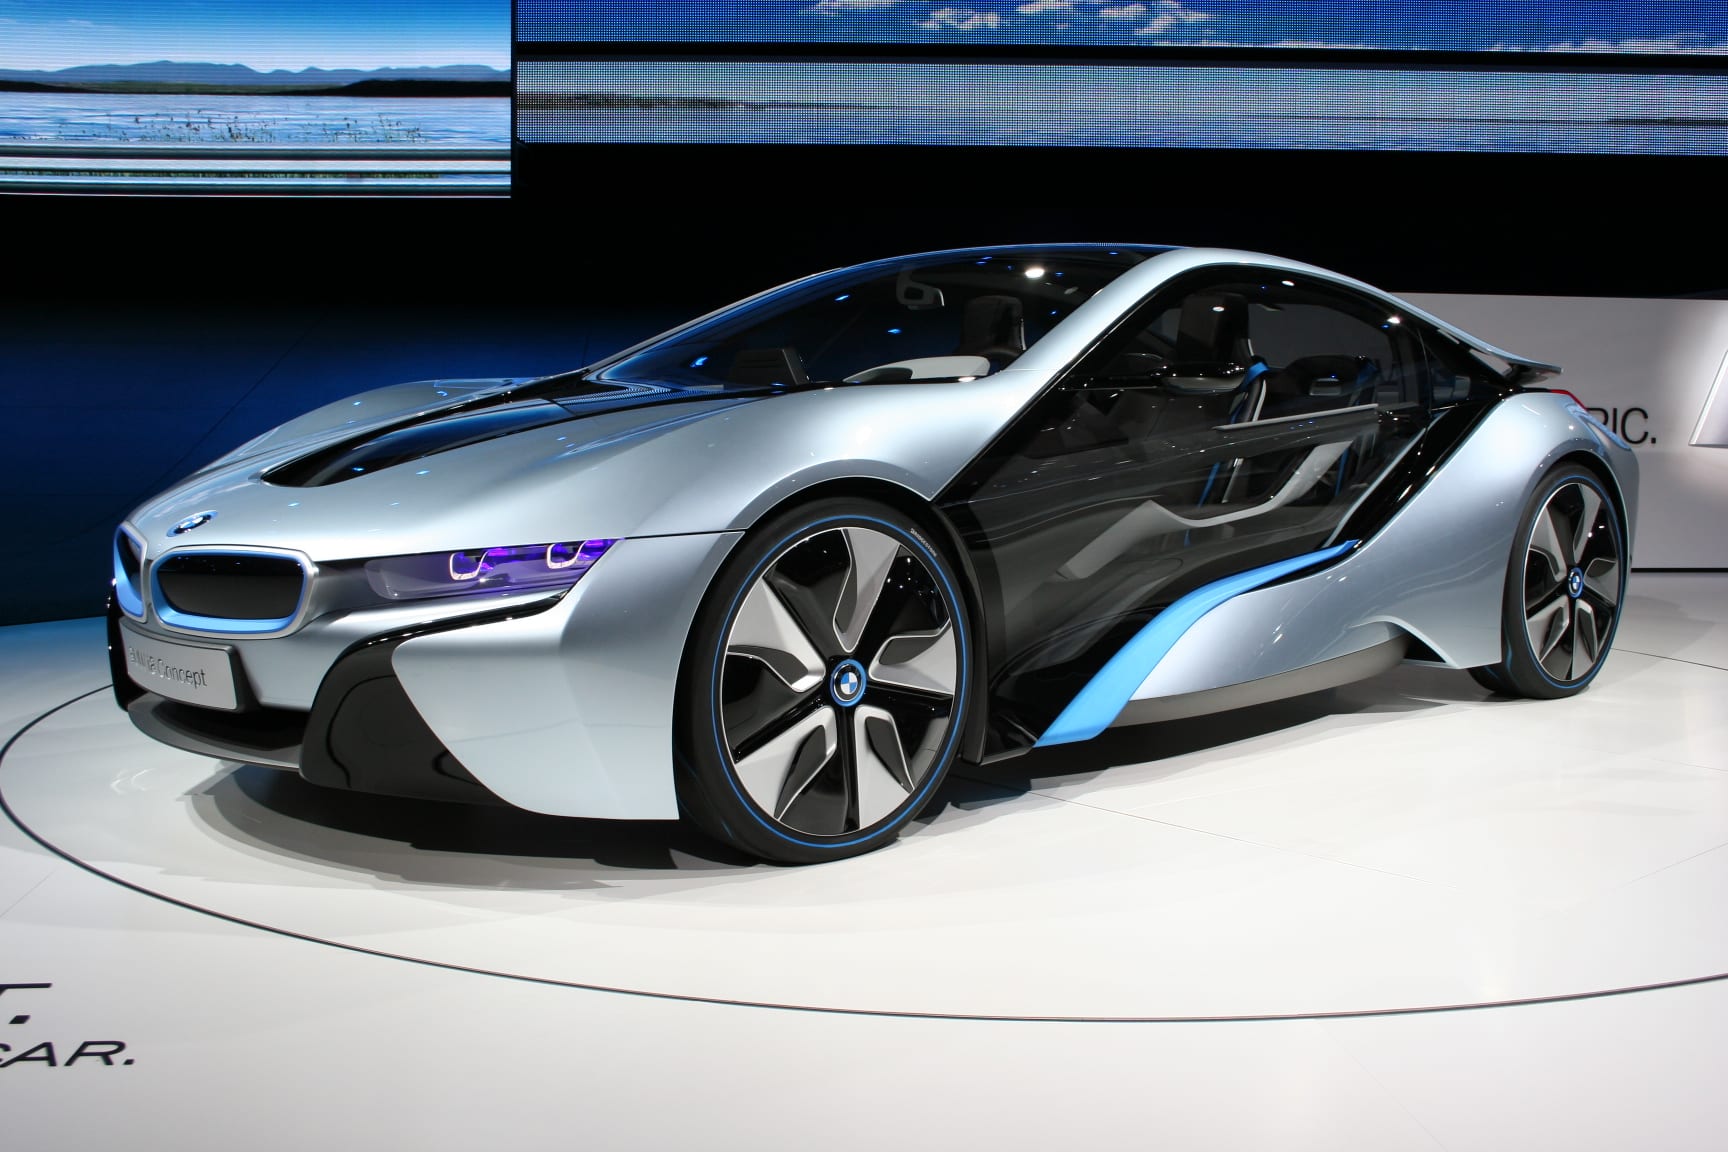 BMW i8 Concept Cars